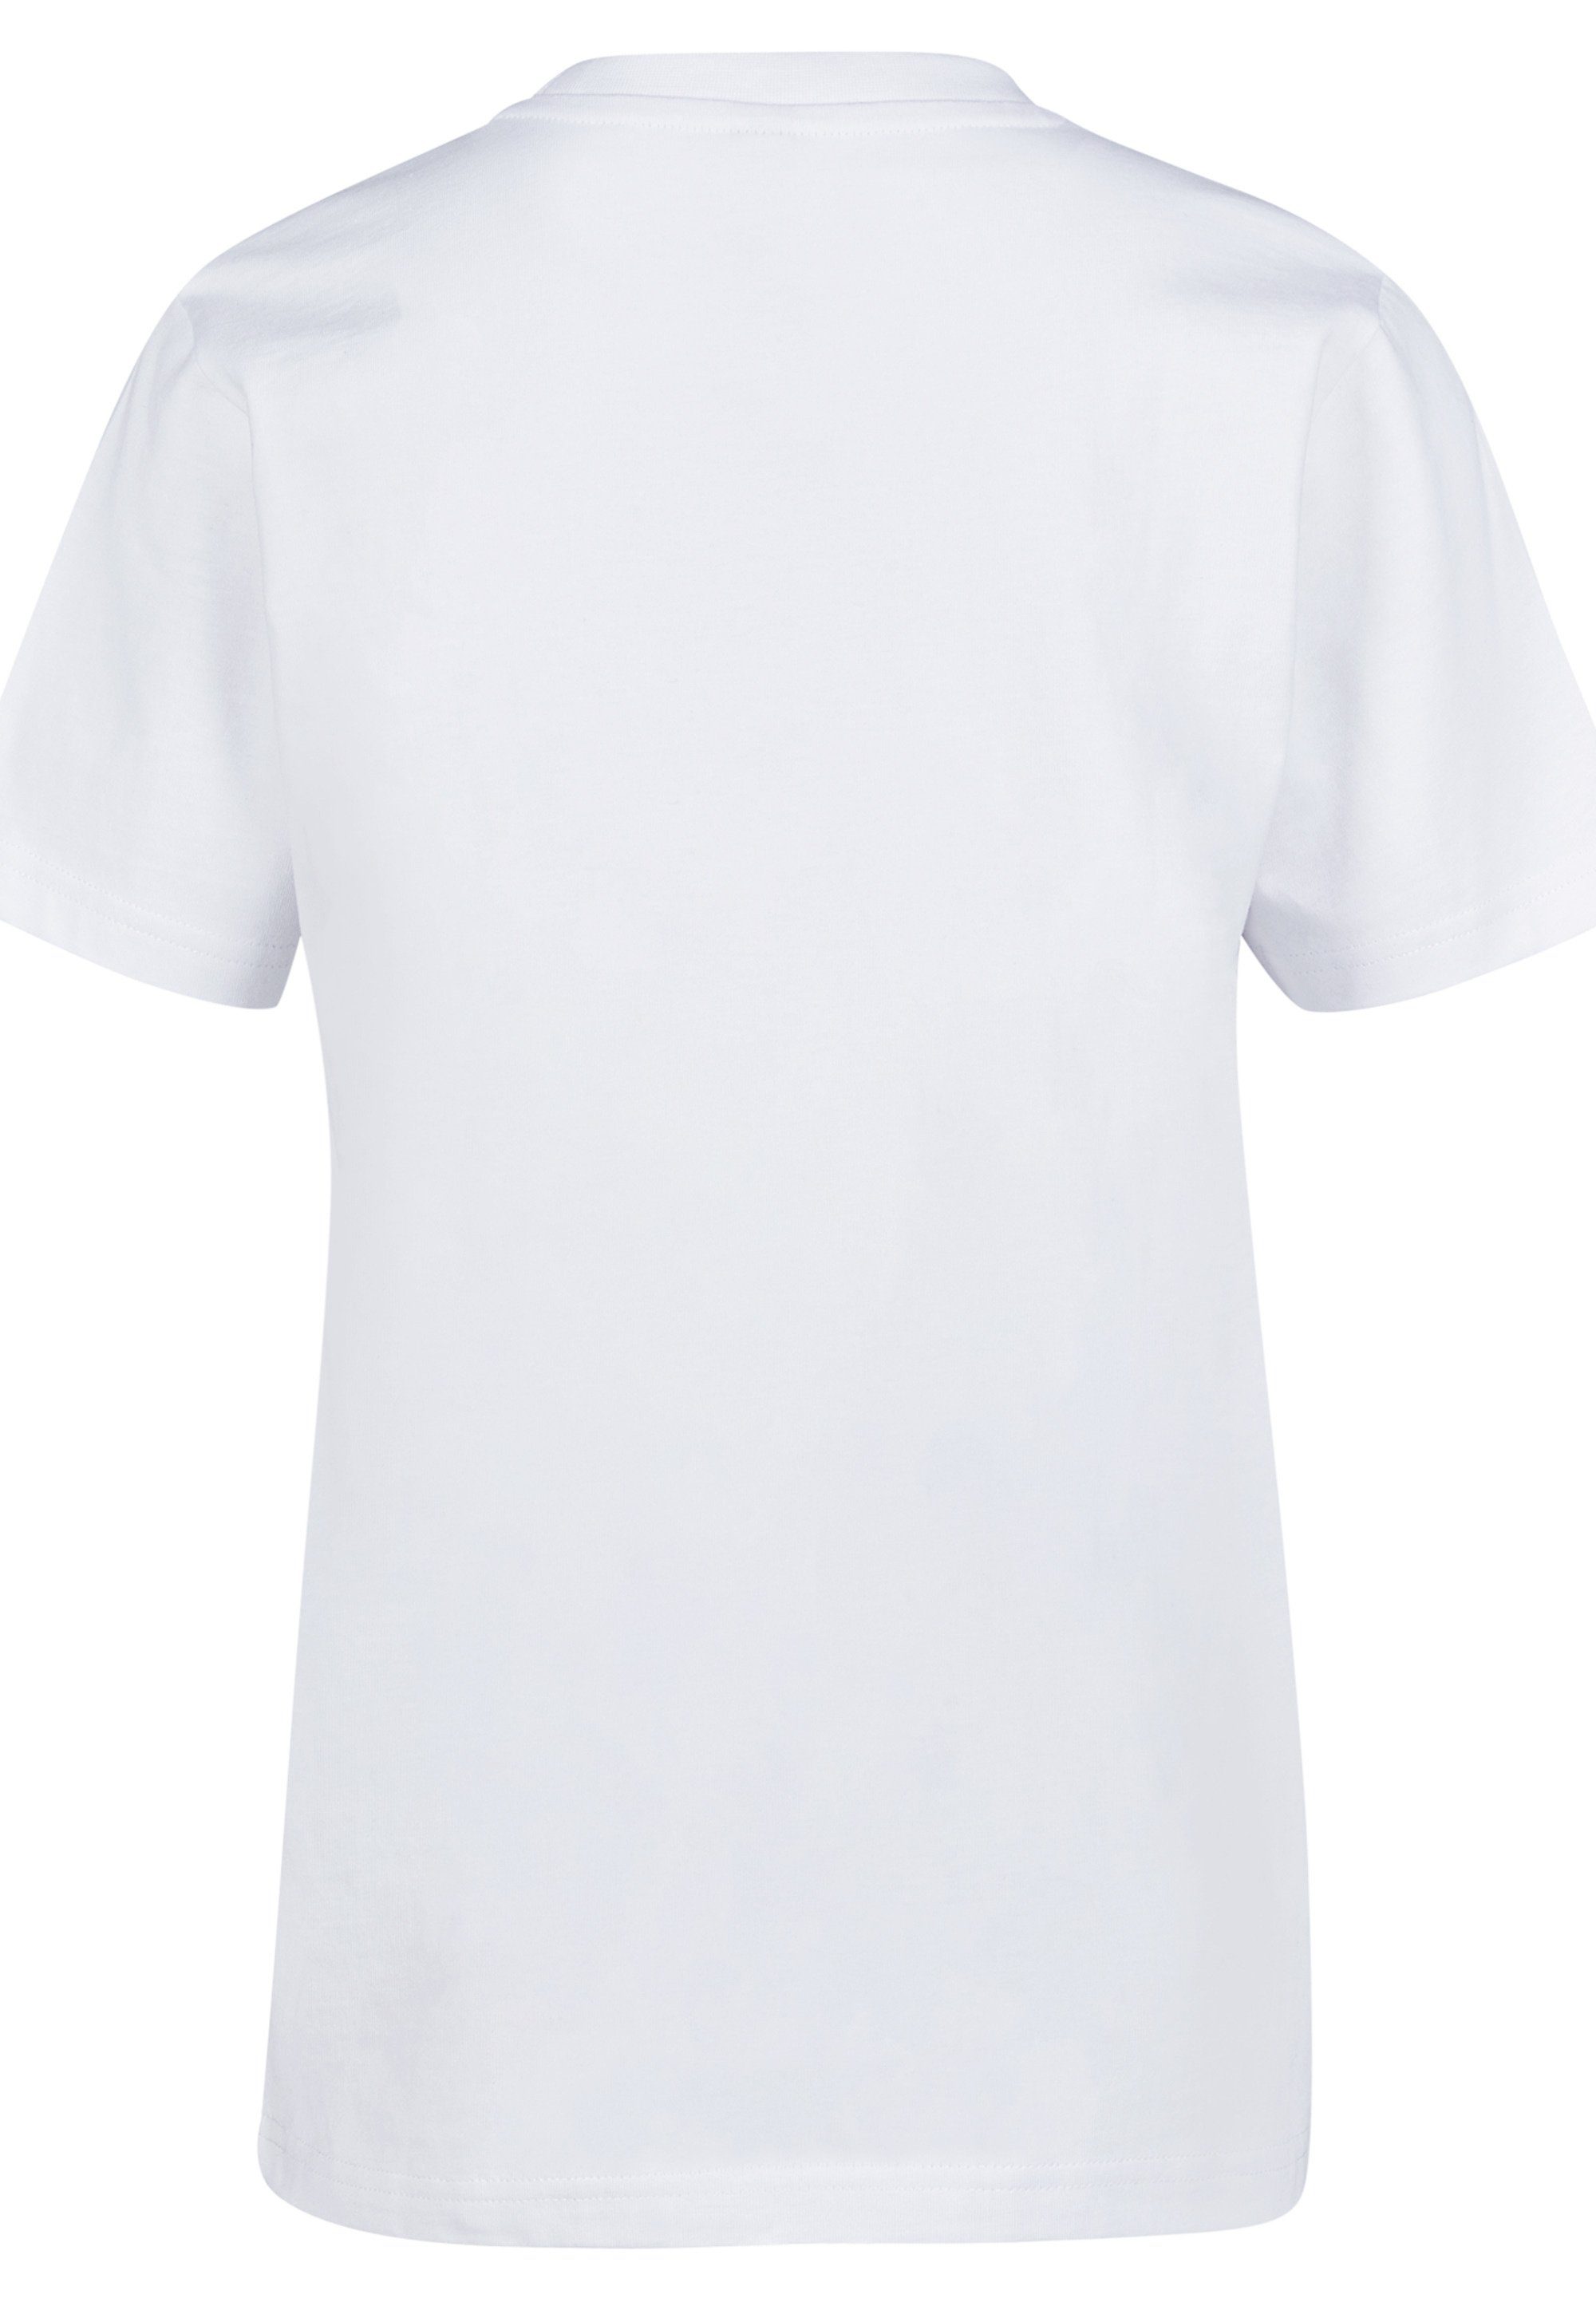 F4NT4STIC T-Shirt NASA Modern Logo White Unisex Kinder,Premium Merch,Jungen, Mädchen,Bedruckt, Unser Model ist 146cm groß und trägt Größe 146/152